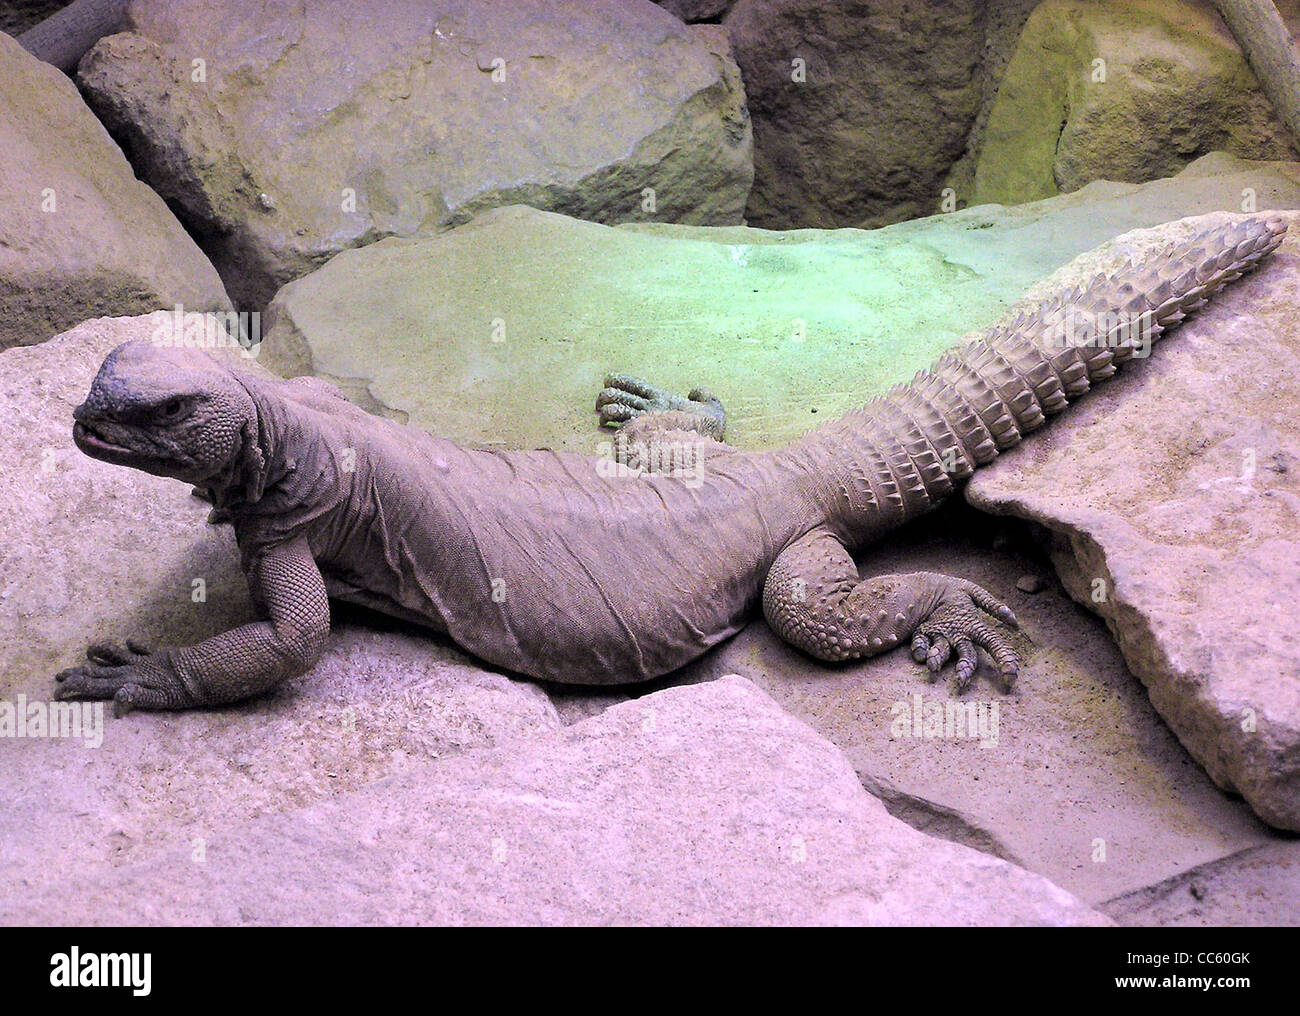 Egyptian spiny tail lizard Uromastyx aegyptius at Bristol Zoo, Bristol, England. Stock Photo